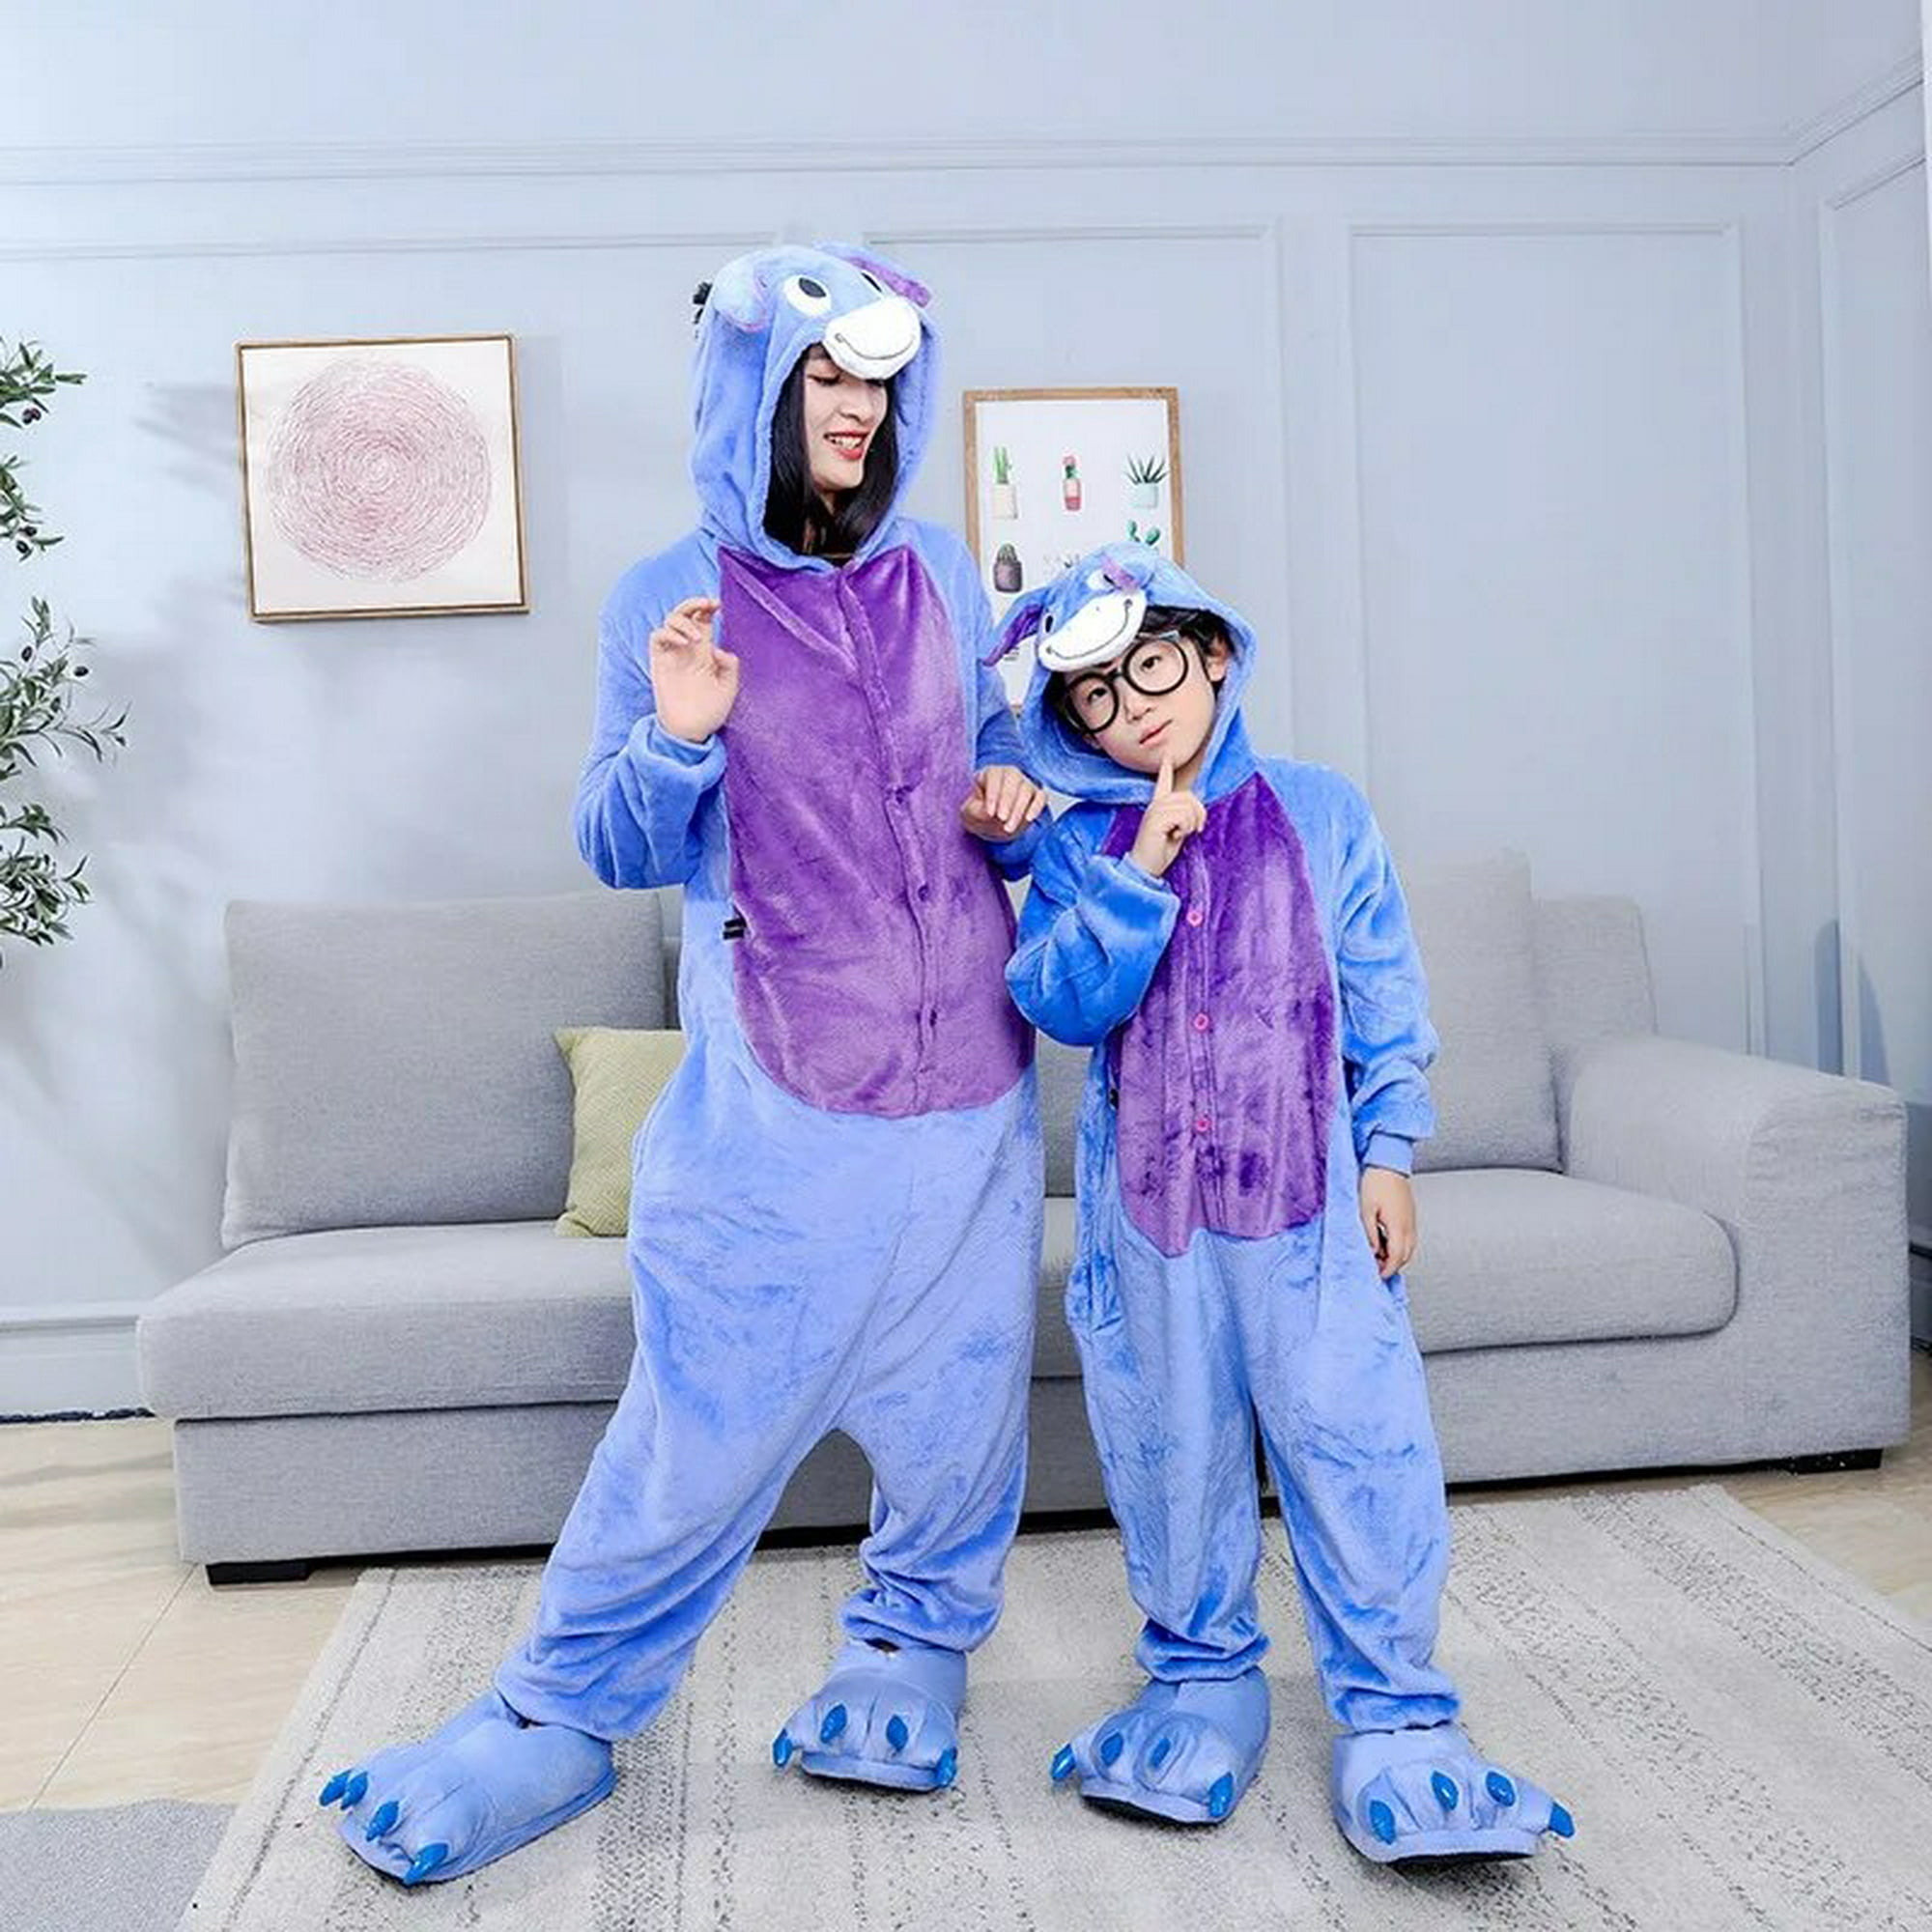 Pijama Stitch Azul para Niños - Traje de Lilo y Stitch